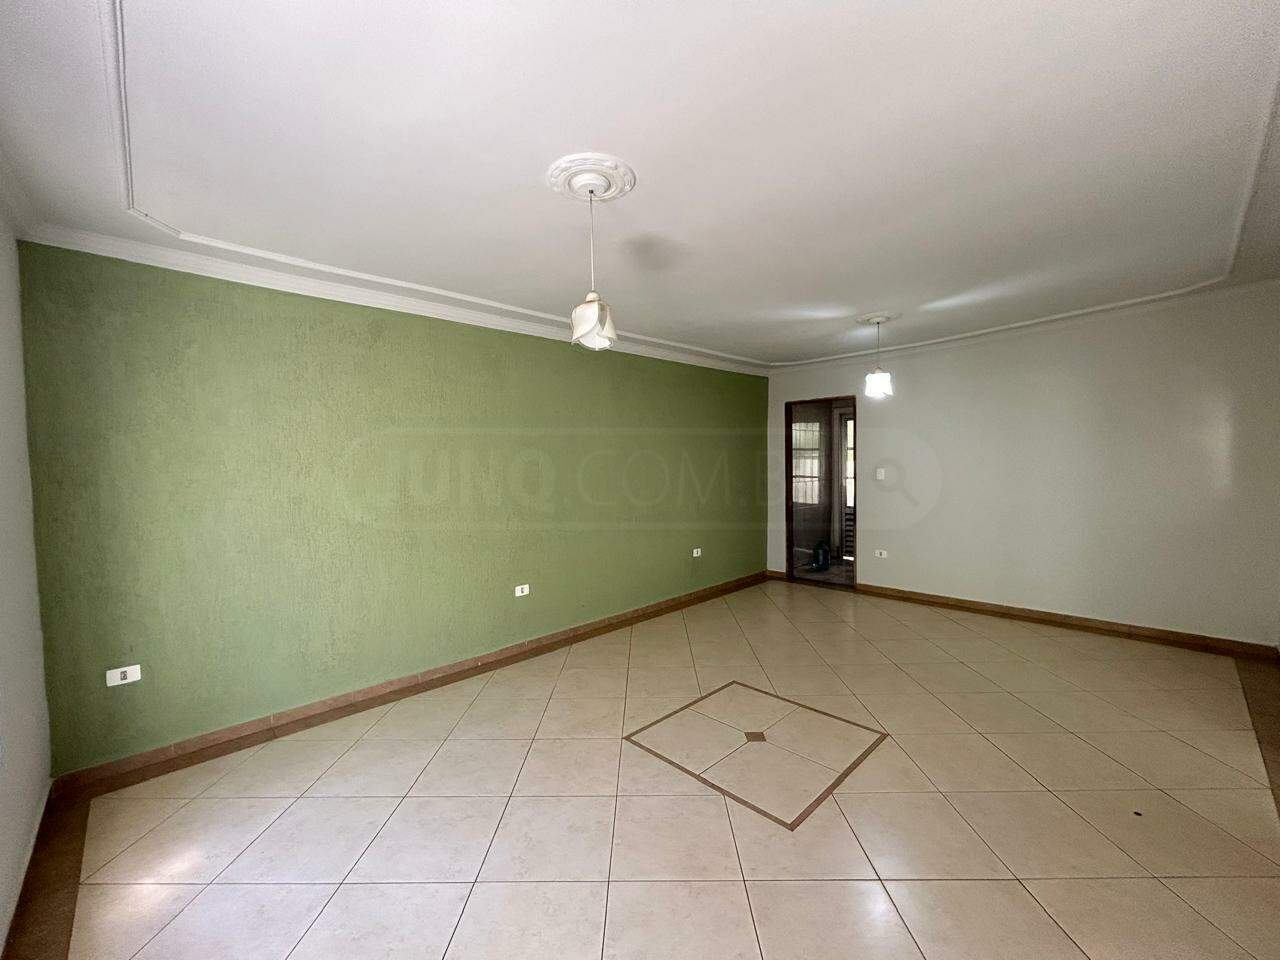 Casa à venda, 2 quartos, sendo 1 suíte, 2 vagas, no bairro Jardim Alvorada em Piracicaba - SP